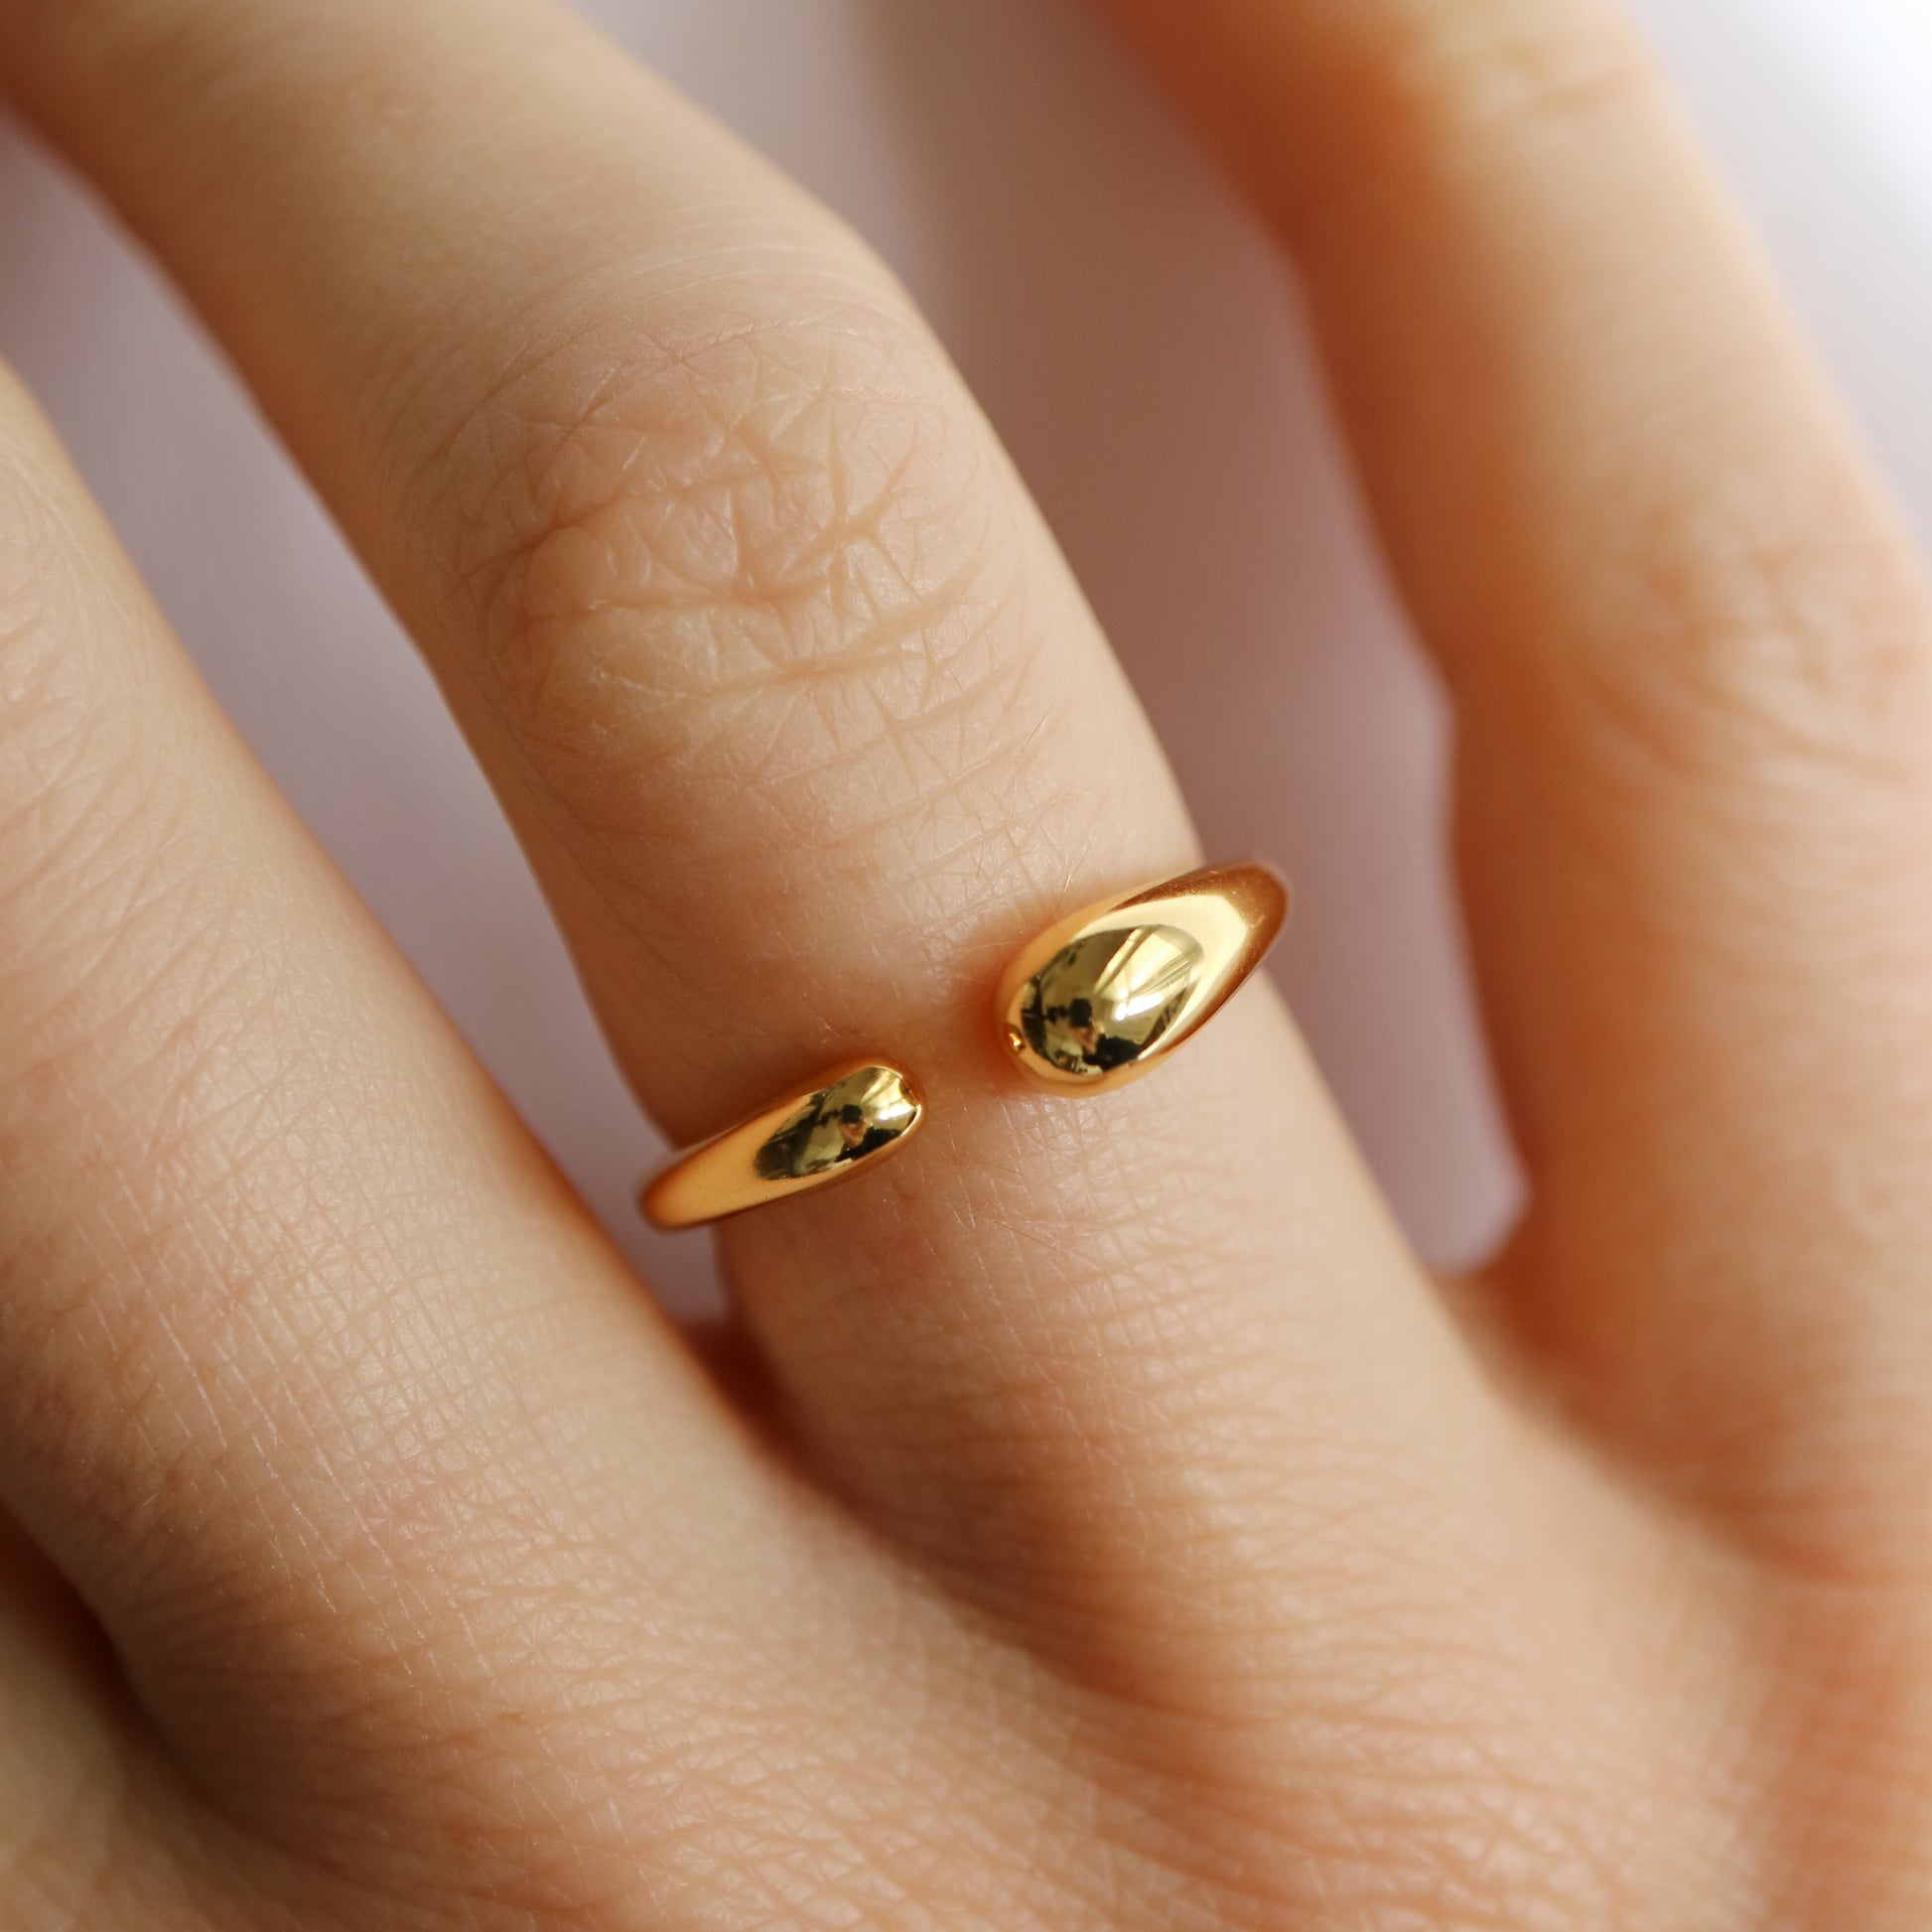 Hermes Ring in gold